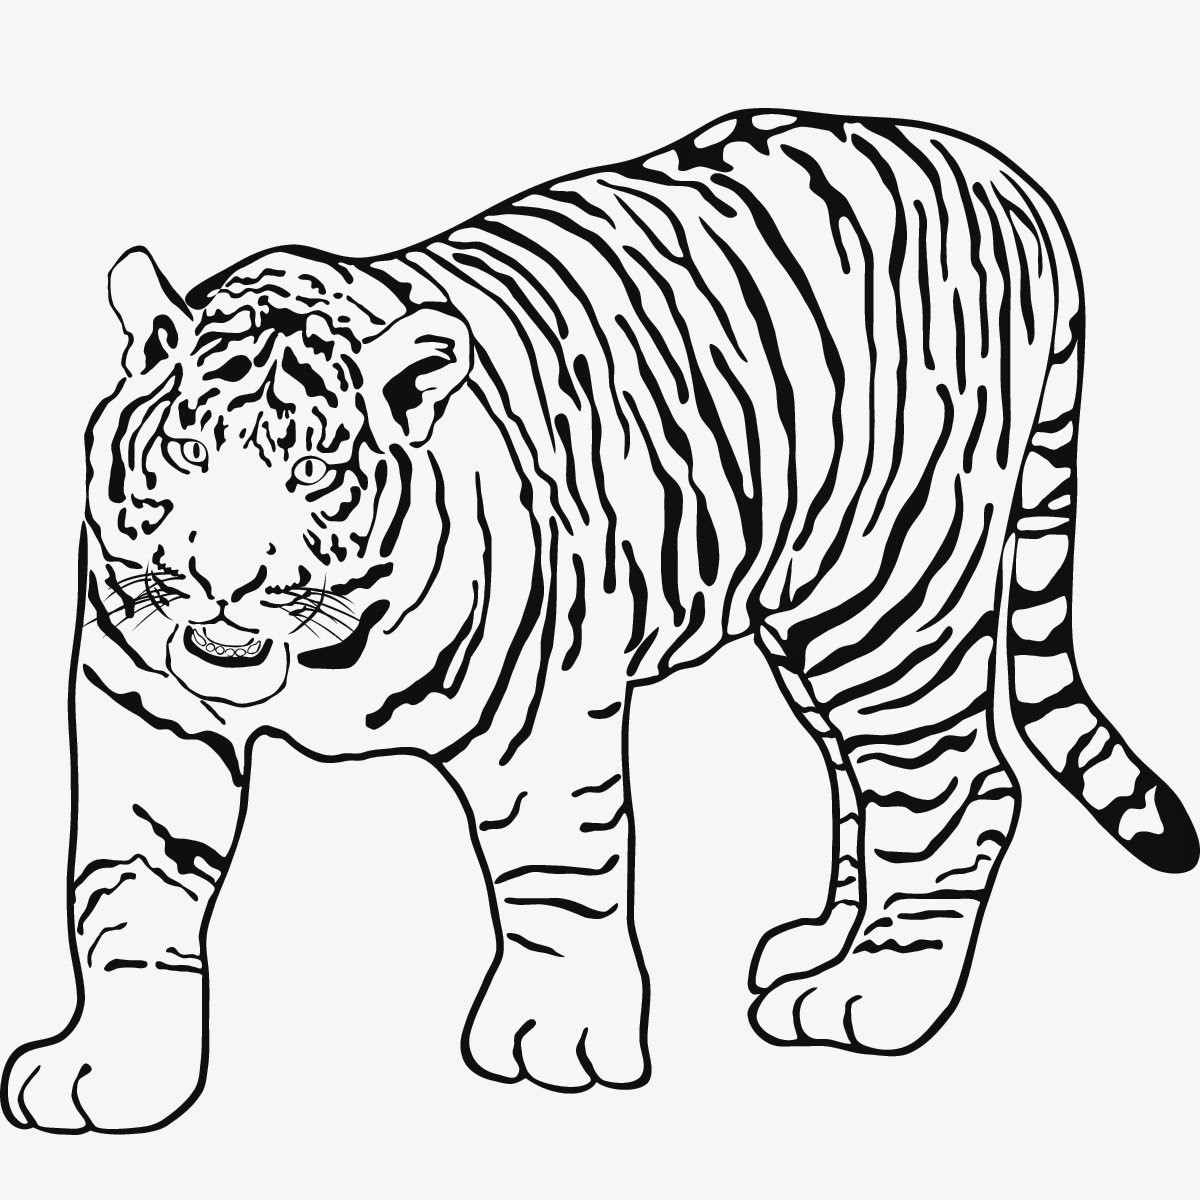 Malvorlagen Tiger
 Malvorlagen Gratis TIGER MALVORLAGEN